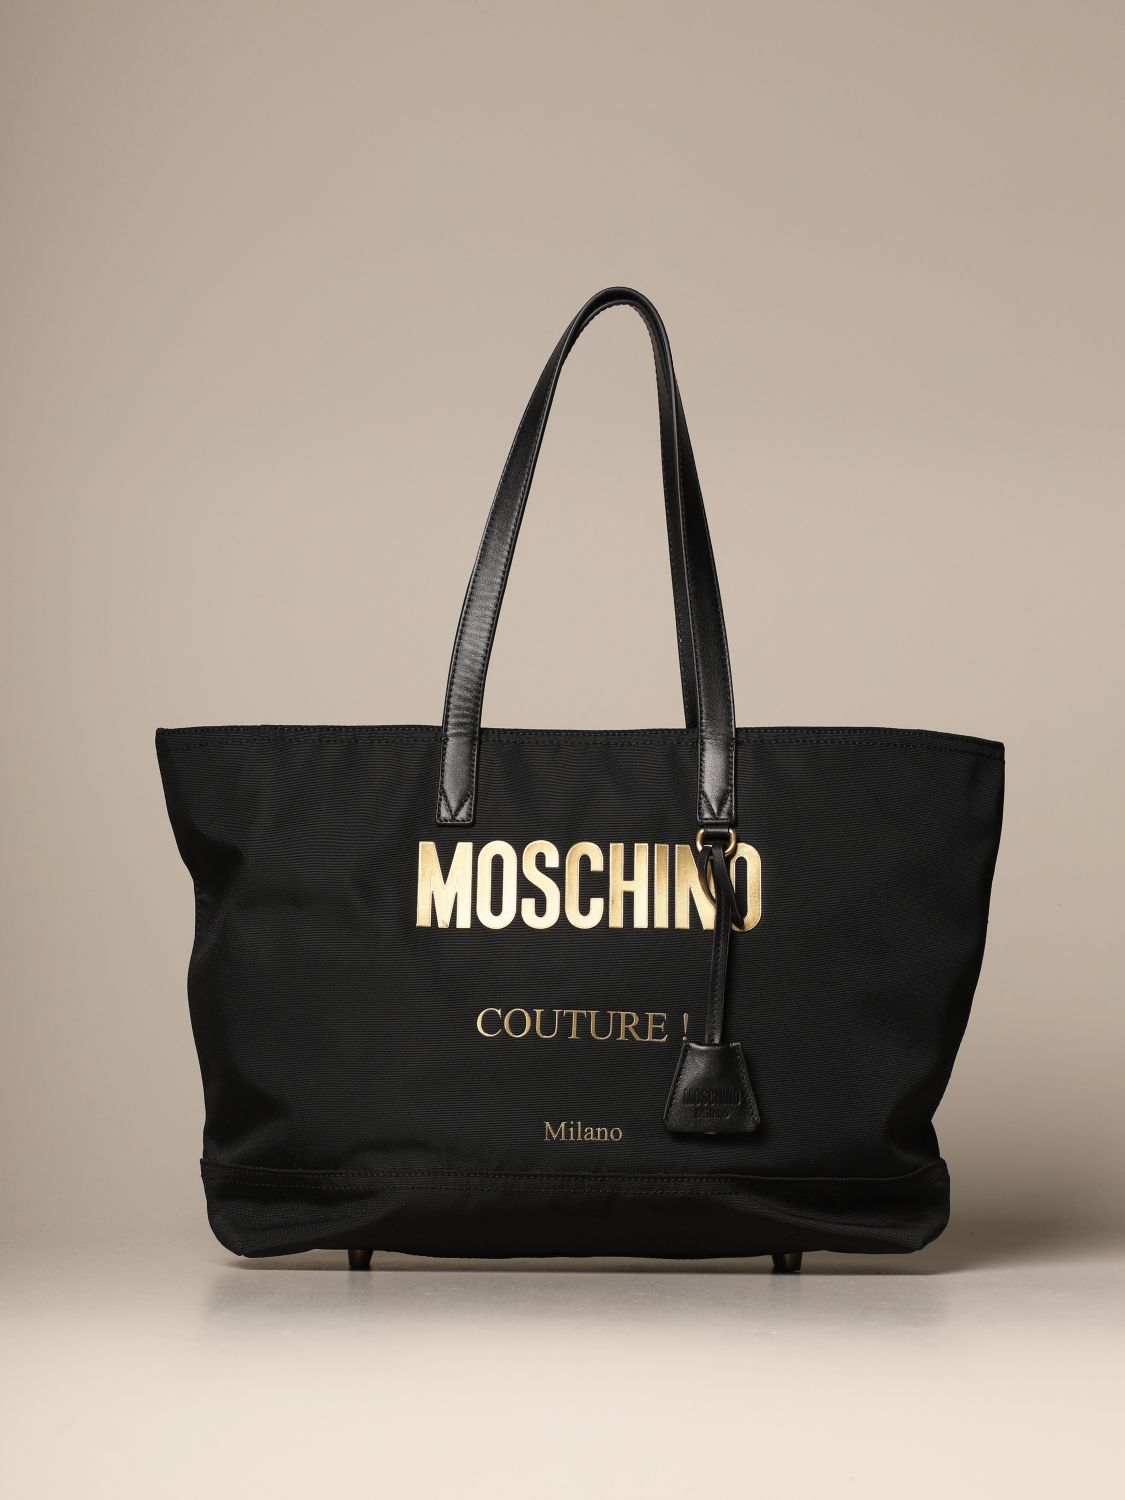 Outlet de Moschino Couture: tote para Negro | Bolso Tote Moschino Couture 7406 8205 en línea en GIGLIO.COM